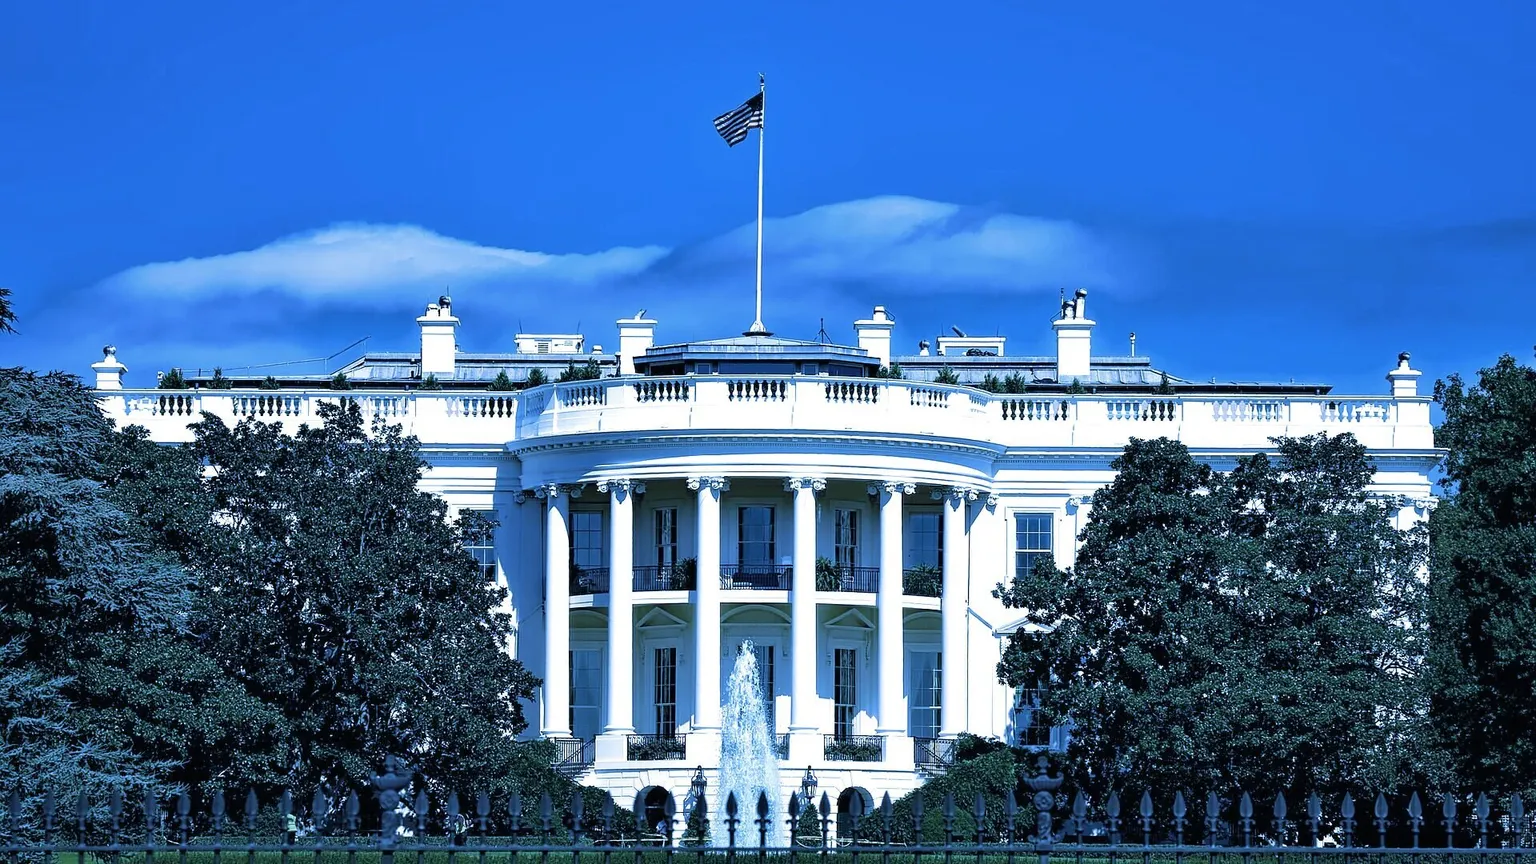 The White House. Image: Pixabay